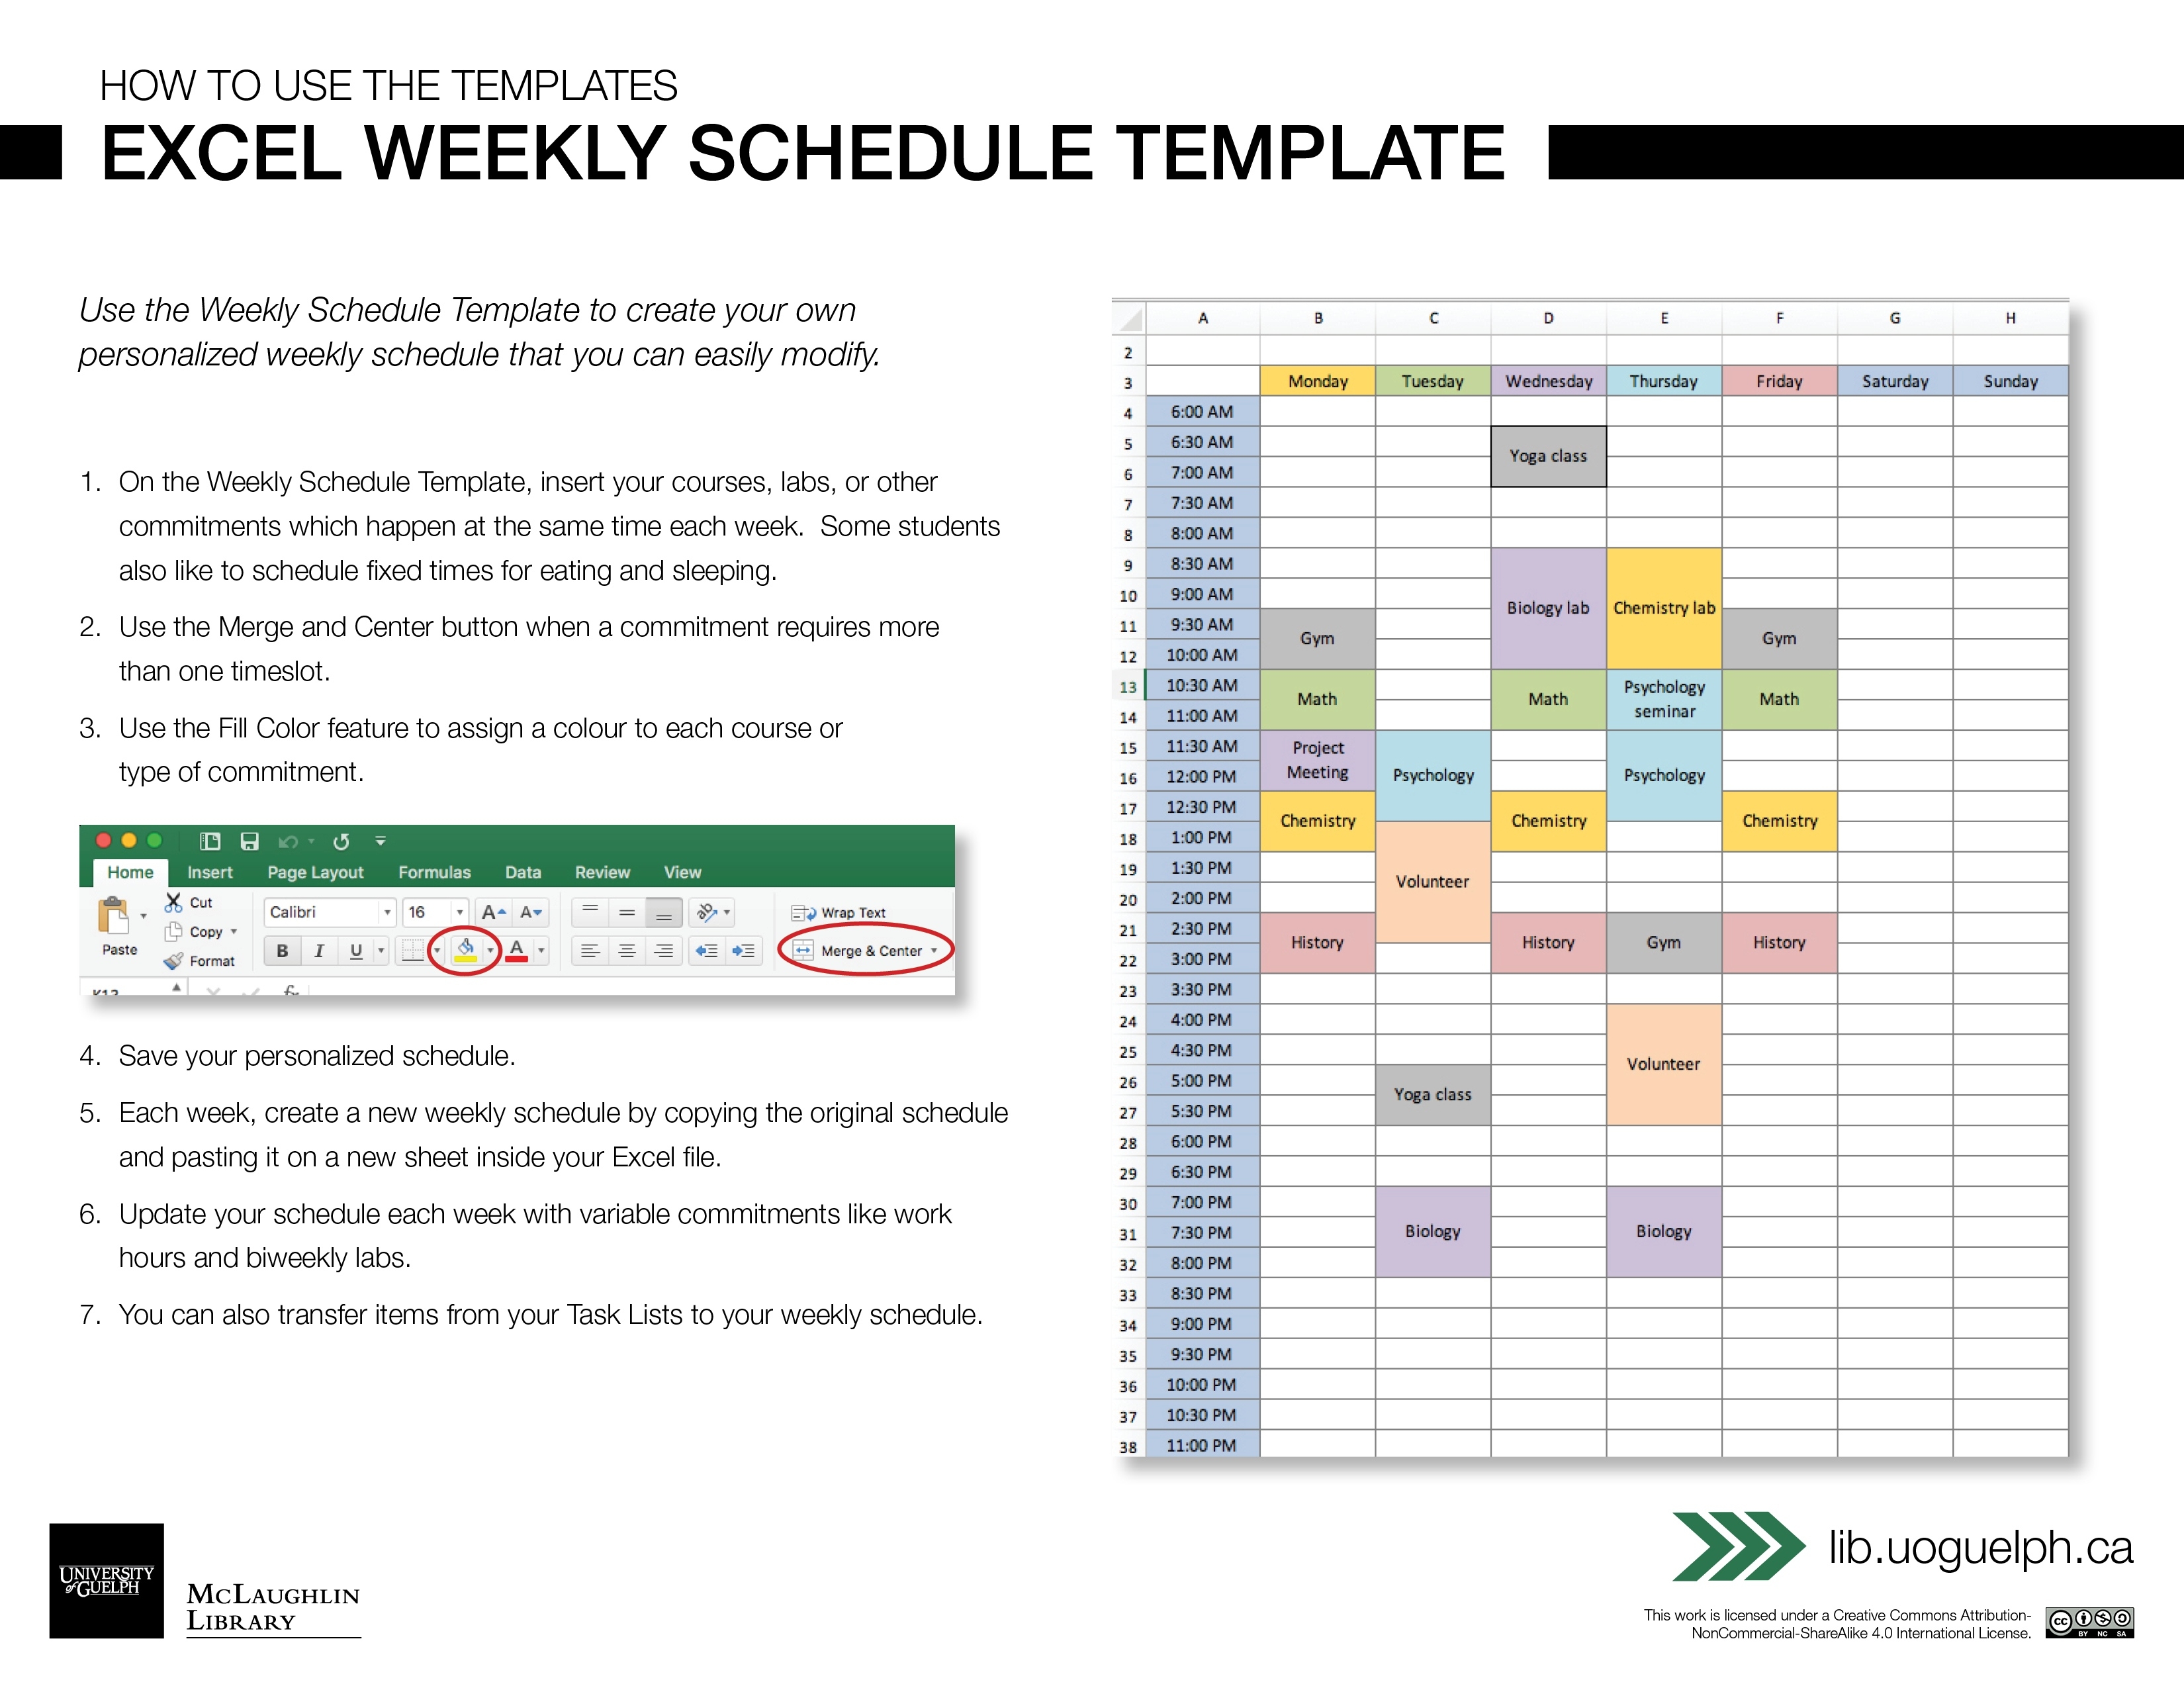 Calendar Week Template Excel Printable Blank Calendar Template